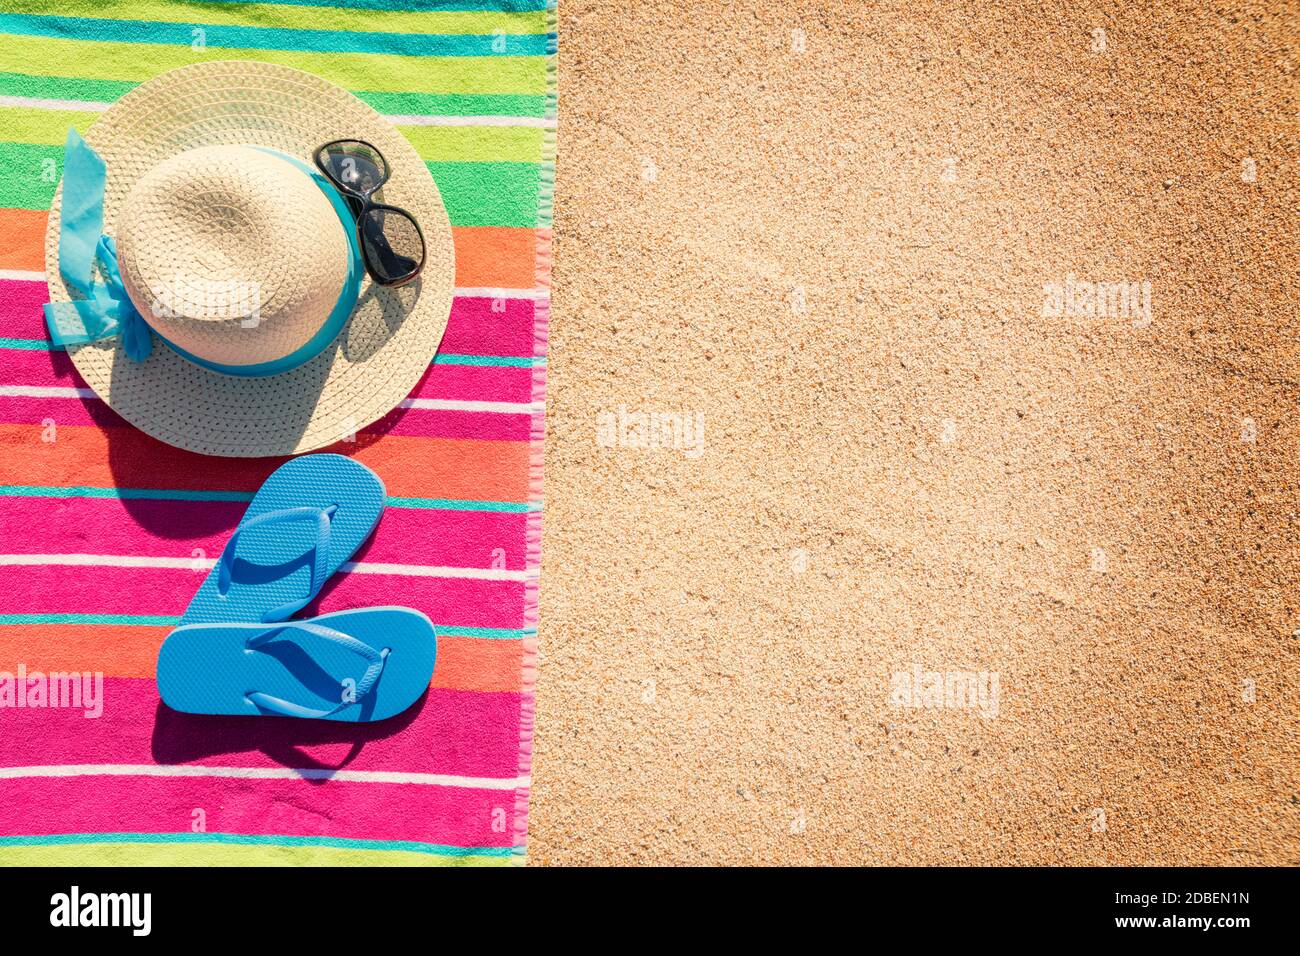 Strandtuch mit Hut, Sonnenbrille und Flip Flops von oben am Sandstrand fotografiert, heiße Sommer-Tages-Accessoires, Urlaubsziel, sonniger tropischer Strand Hintergrund Stockfoto